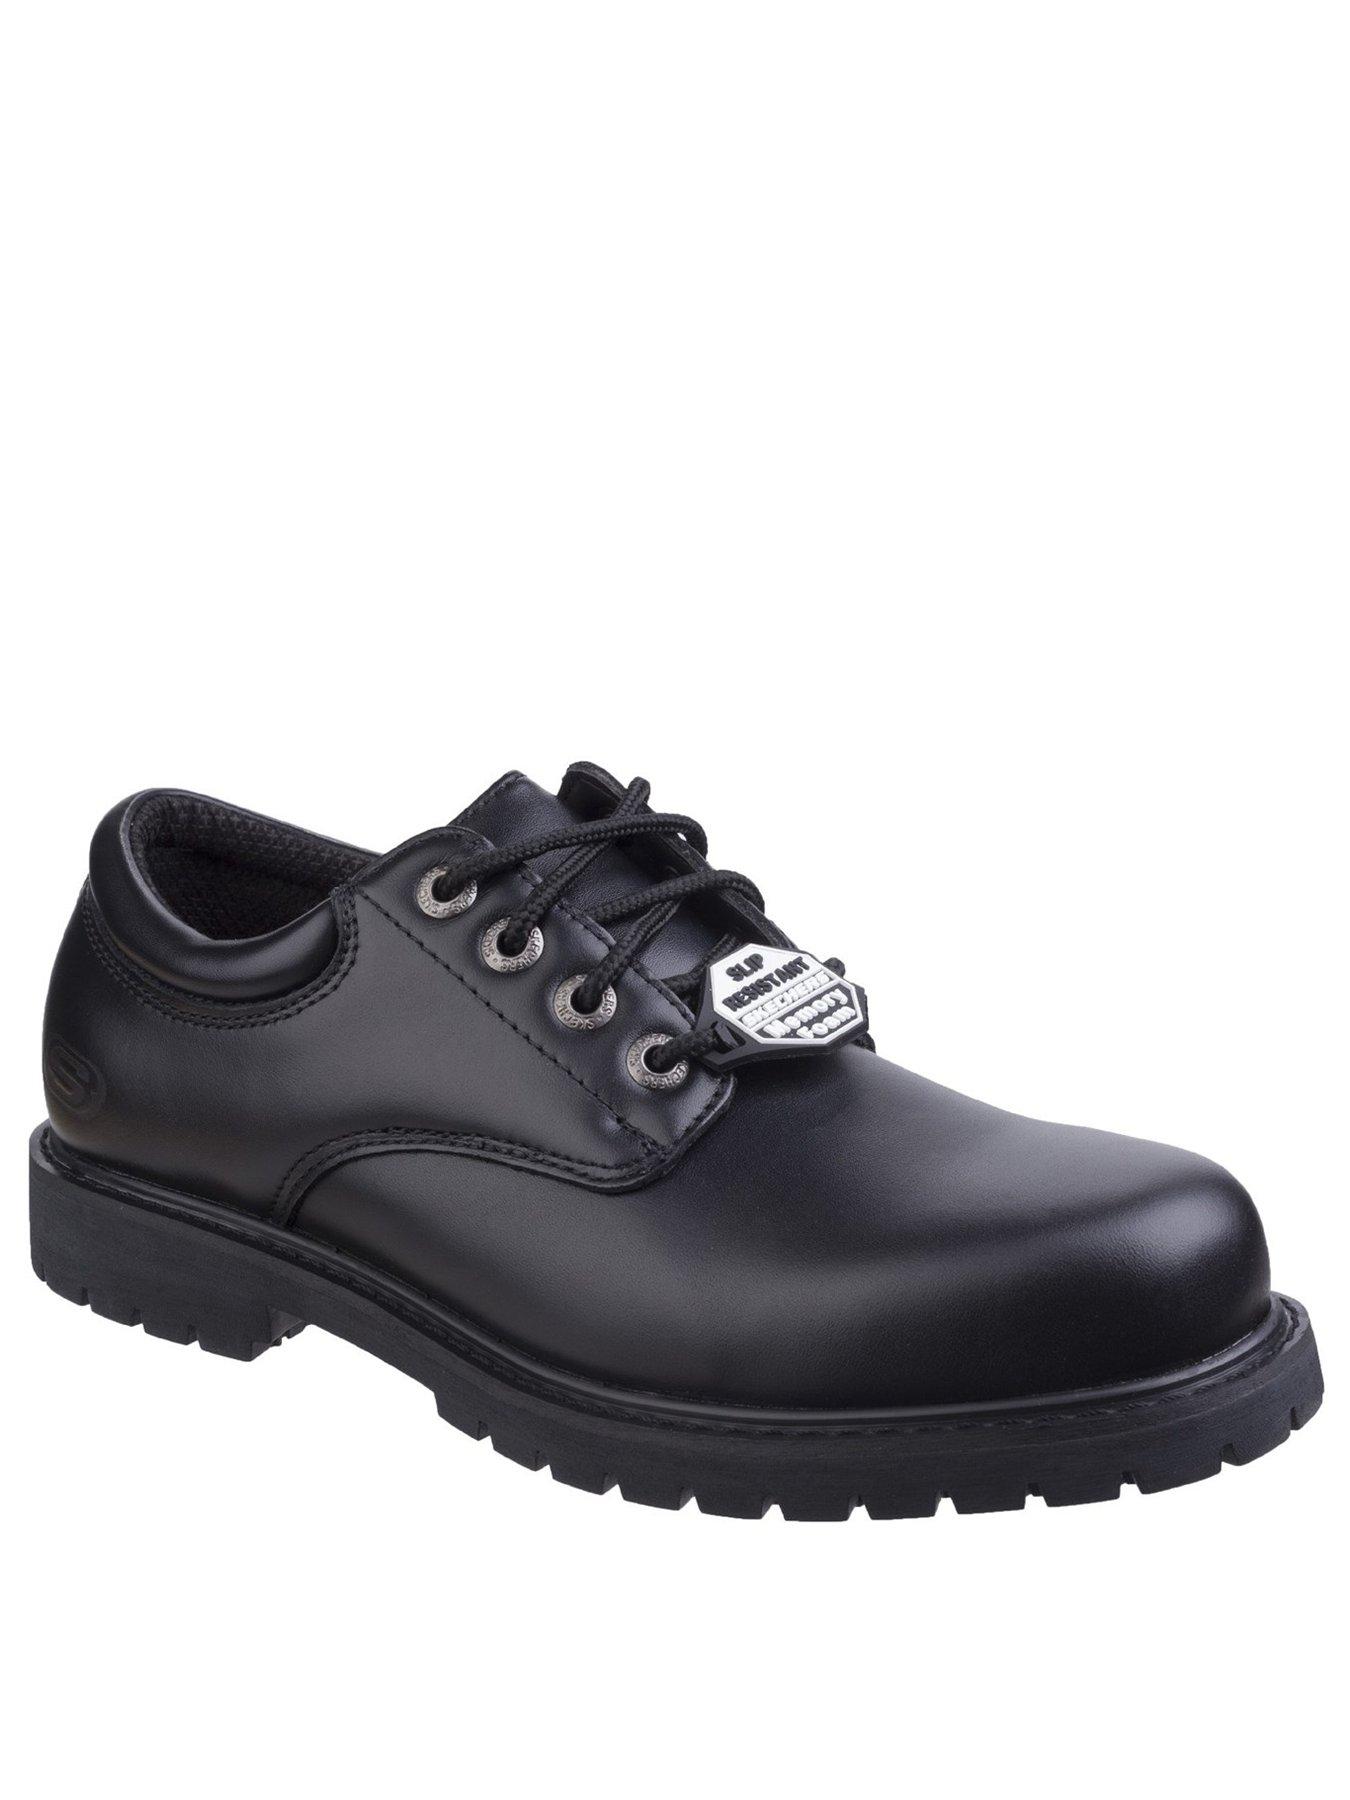 Shoes & boots Cottonwood Elks Lace Up Shoe - Black